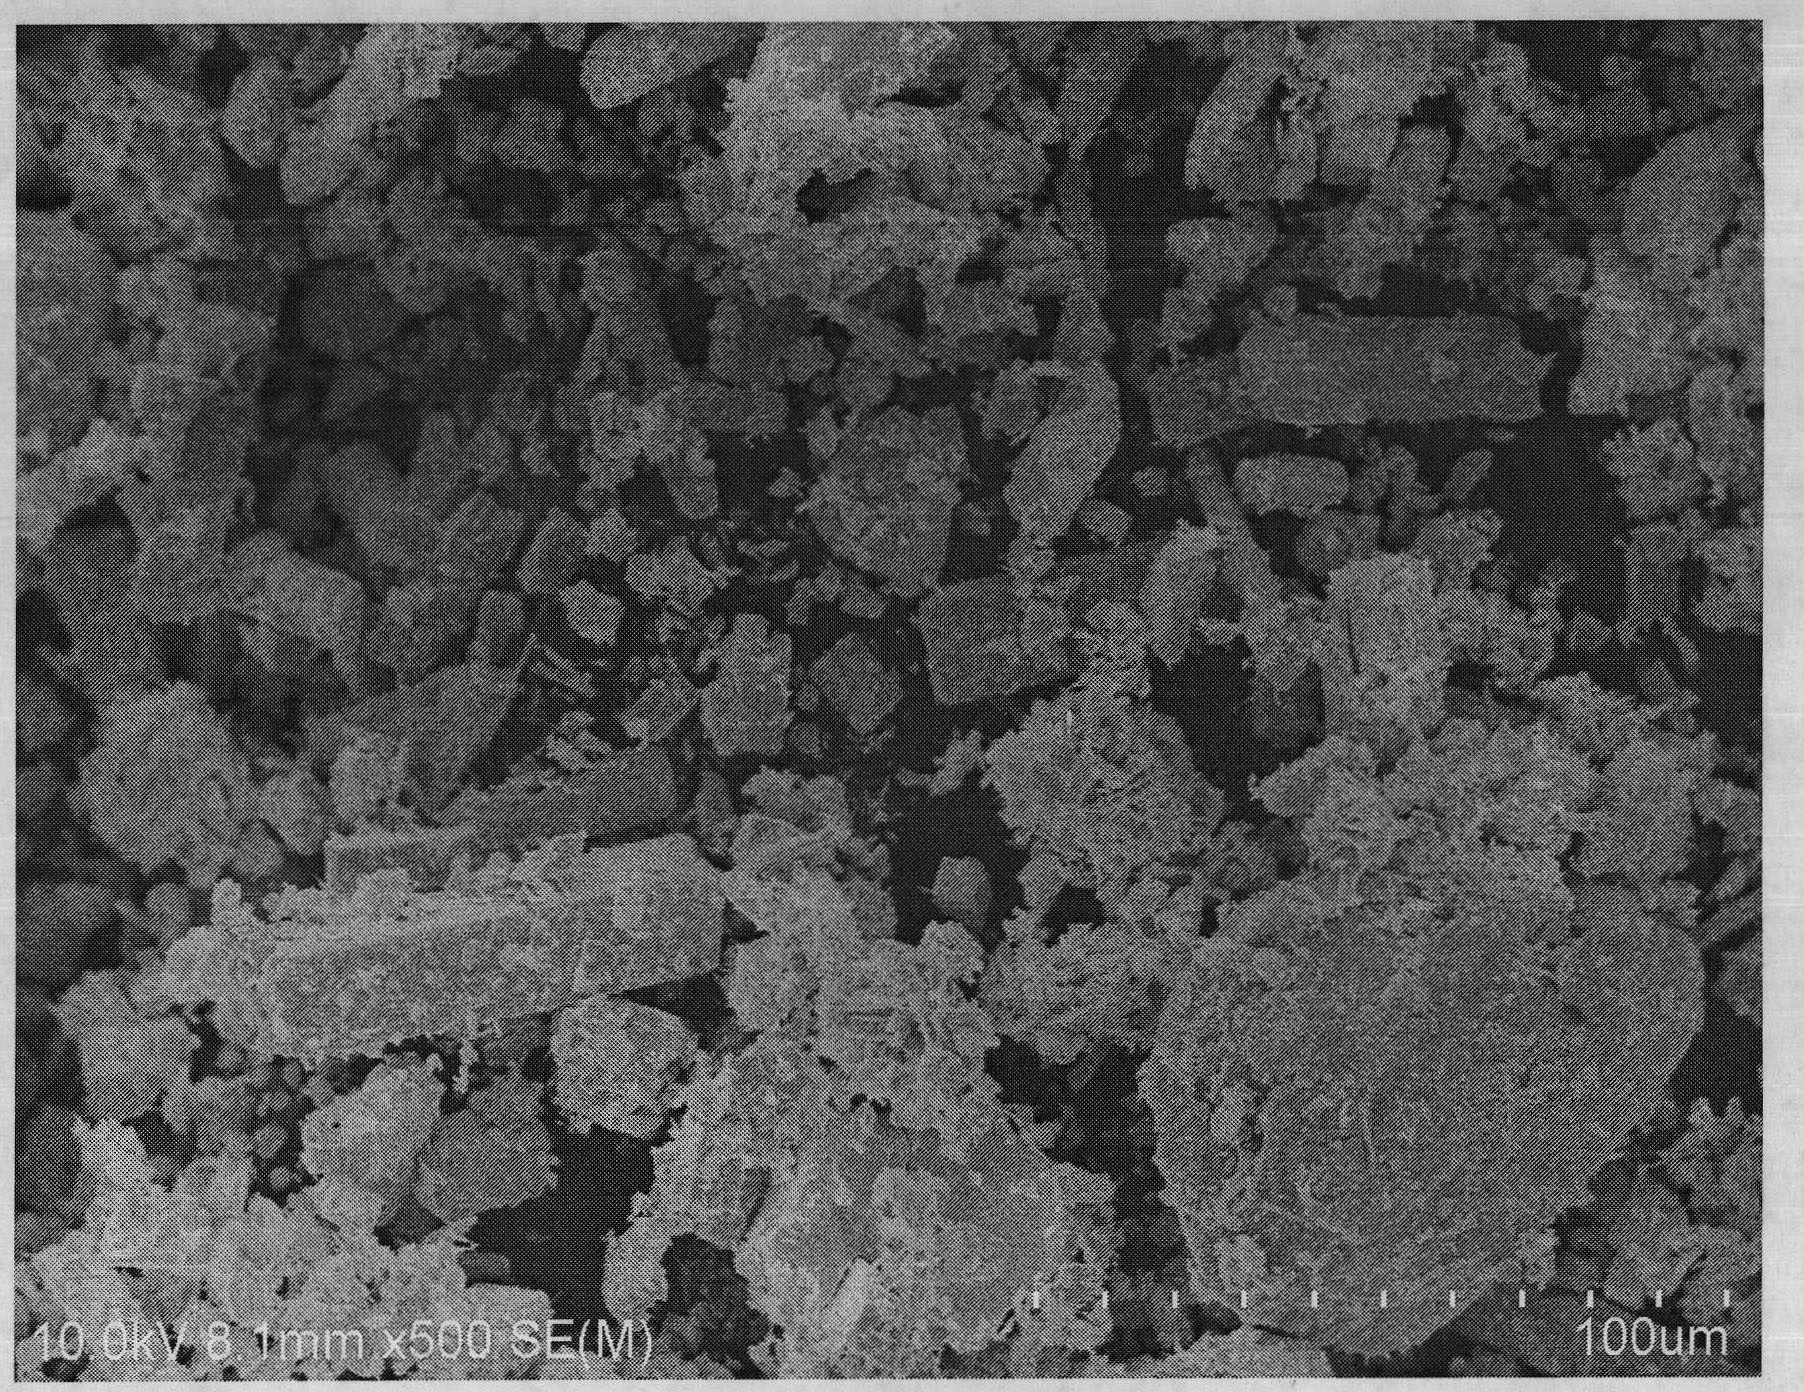 Method for preparing cobalt-doped improved beta-bismuth oxide photocatalyst